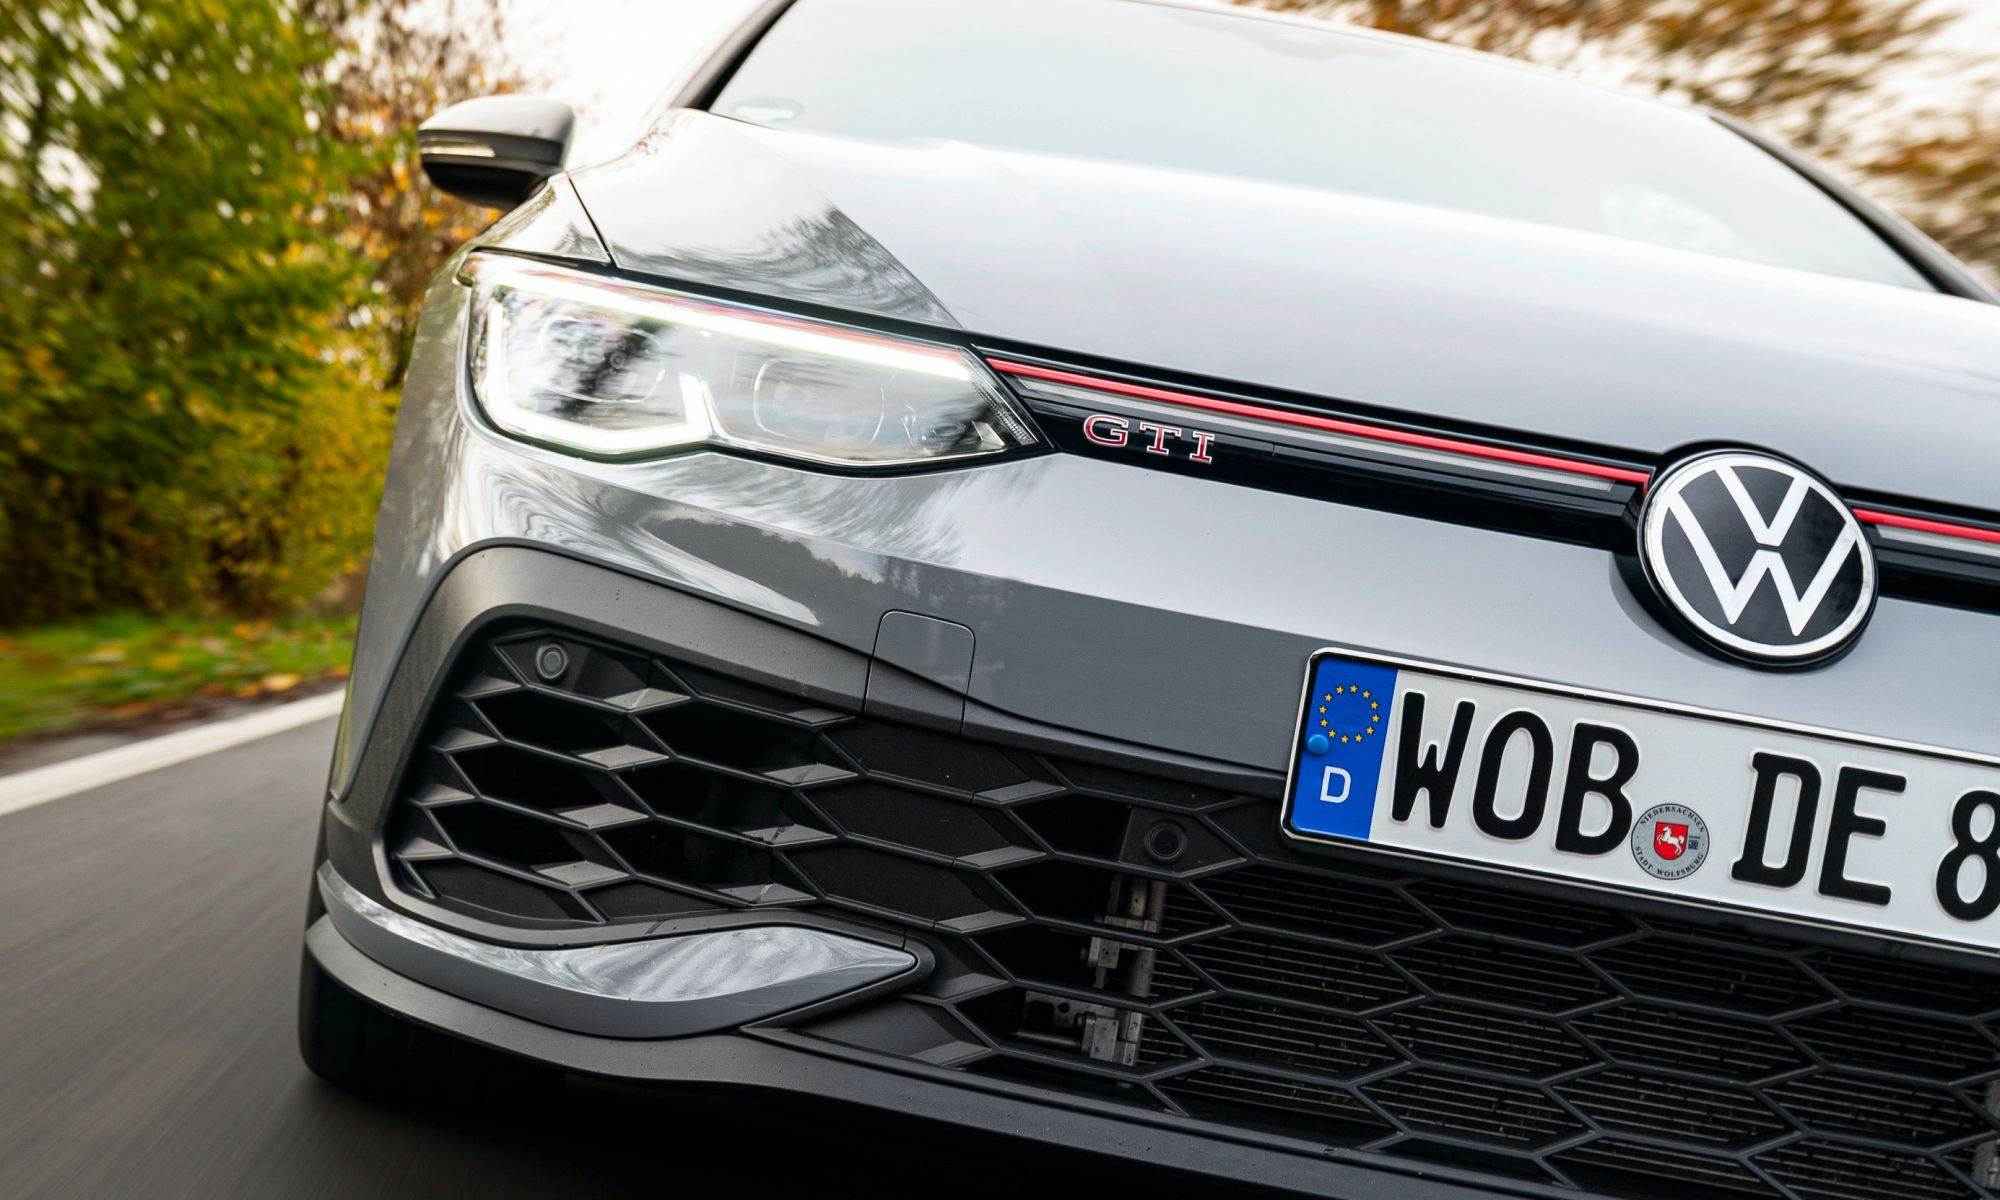 Volkswagen ha decidido apostar por su denominación más valiosa para el nuevo modelo.